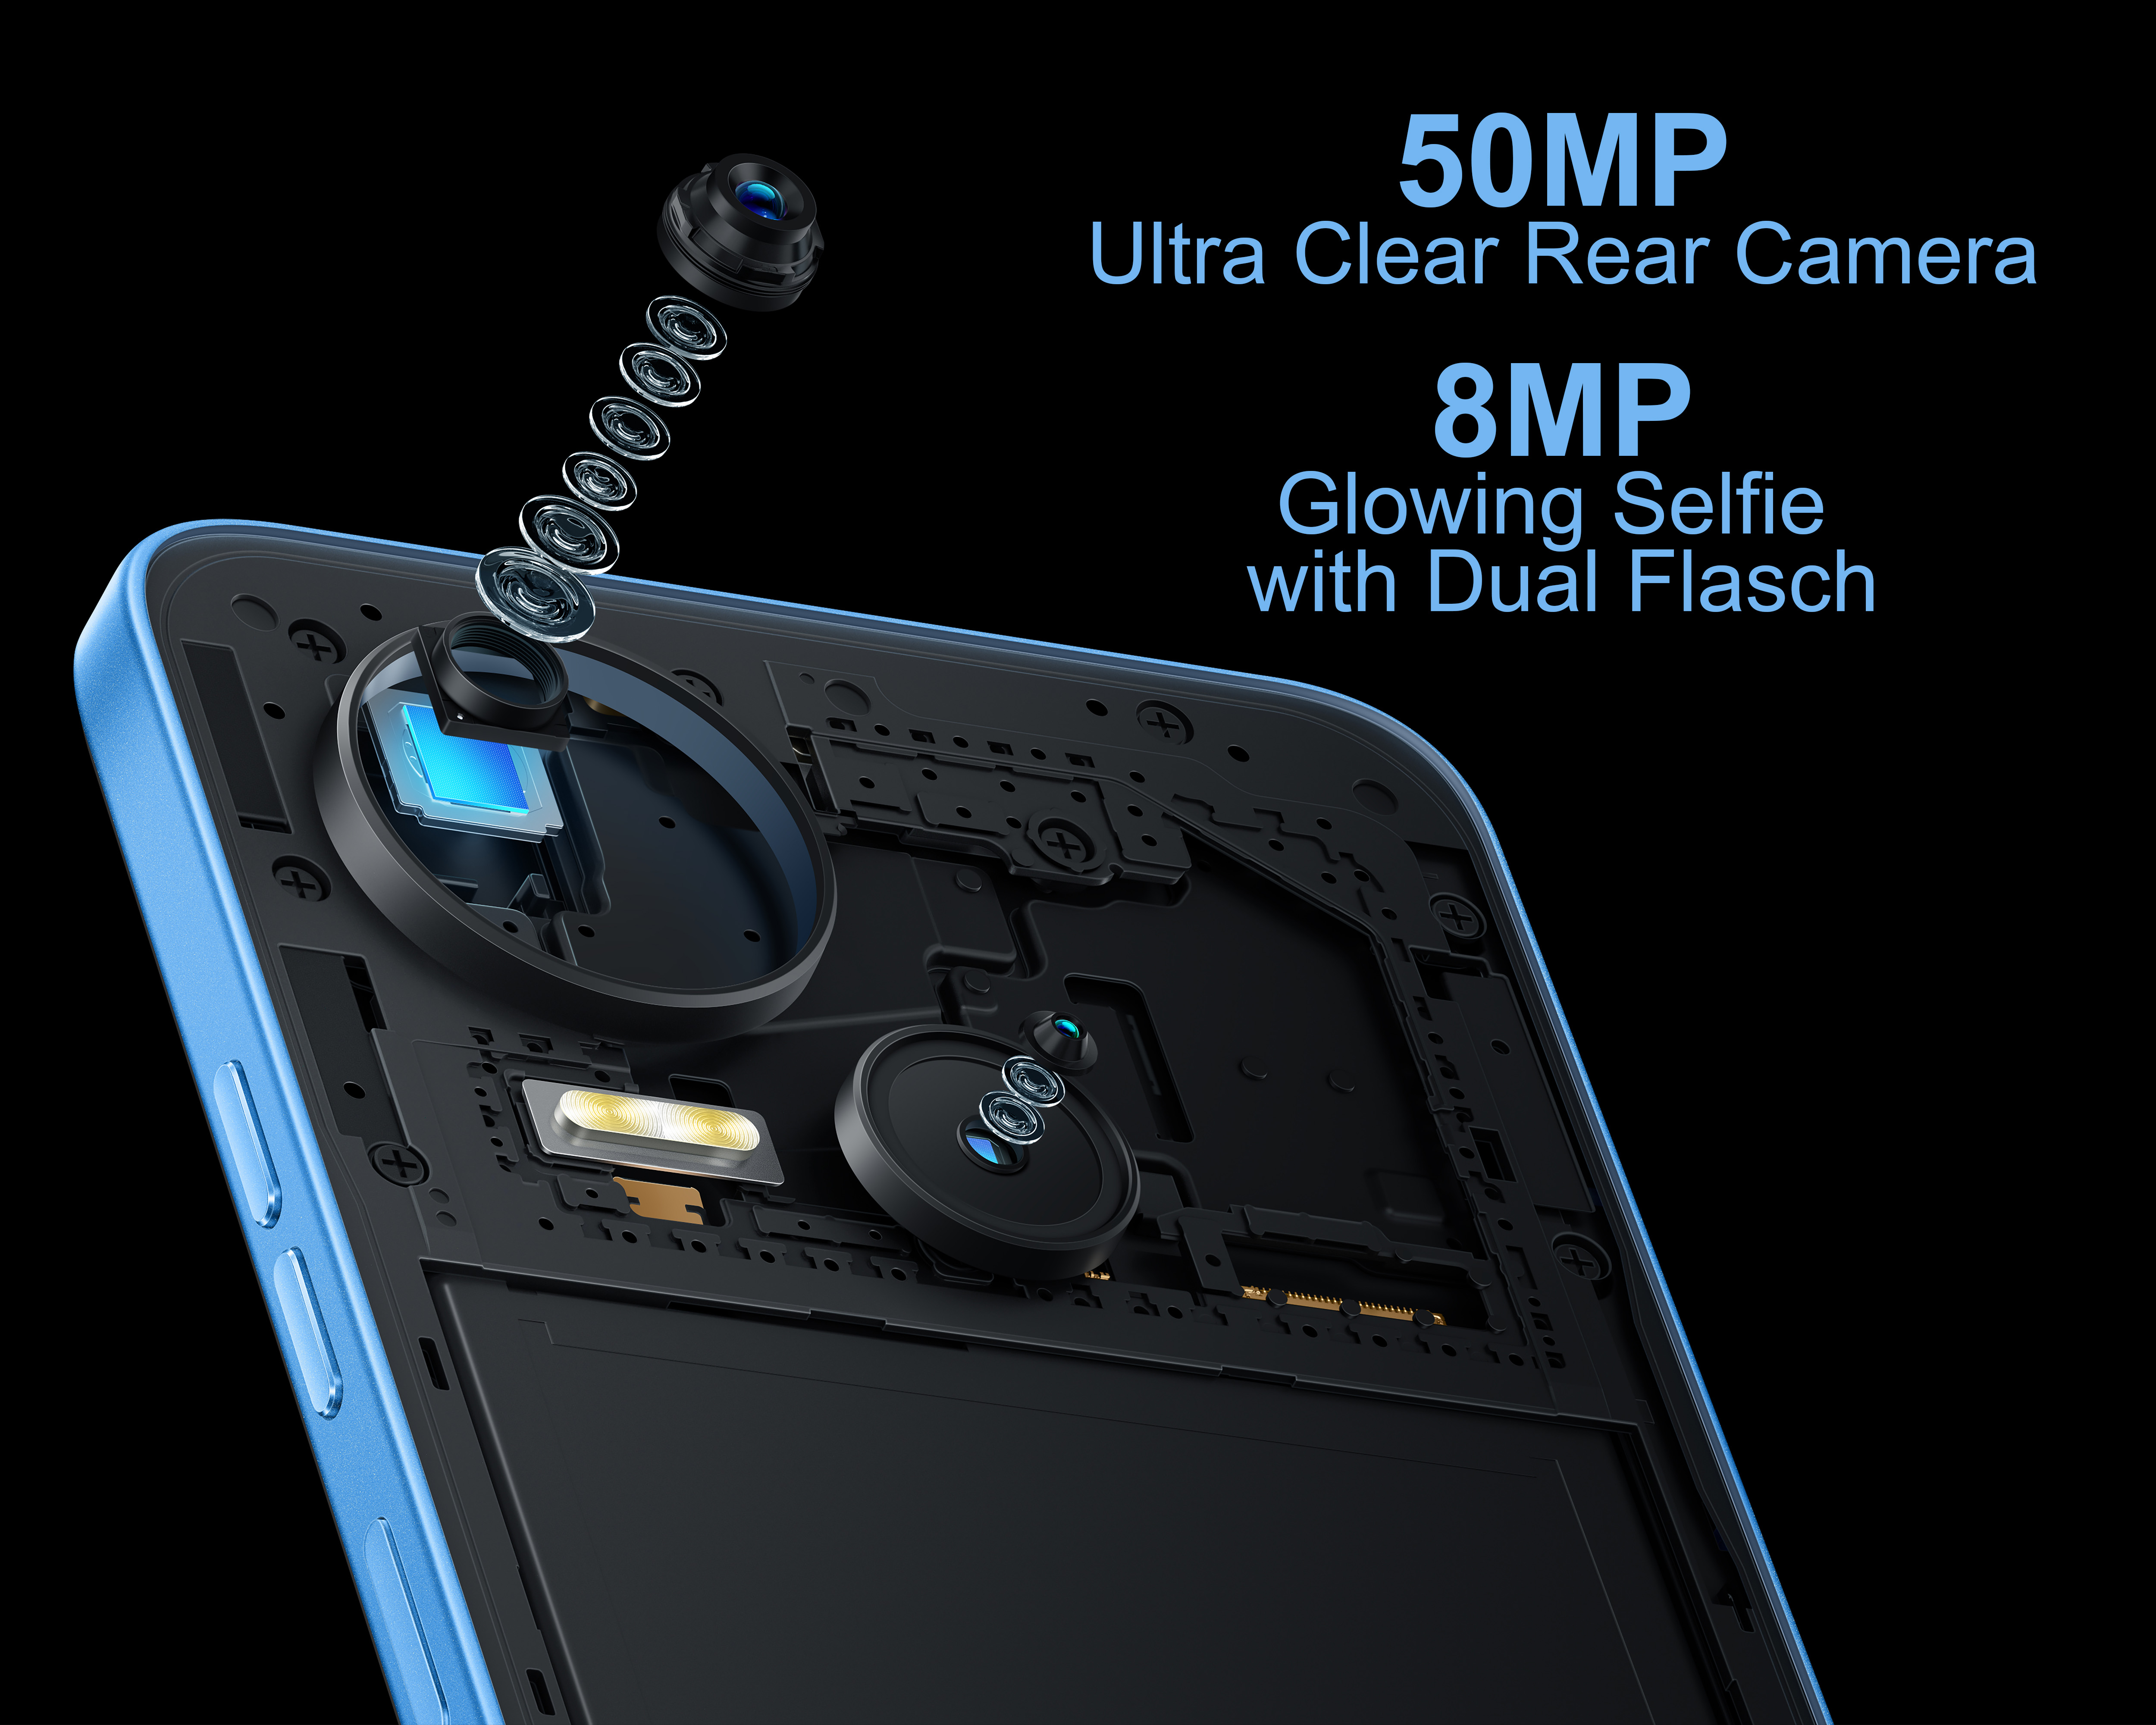 SIM TECNO 64 GB Blau Spark MOBILE Dual 5G 10